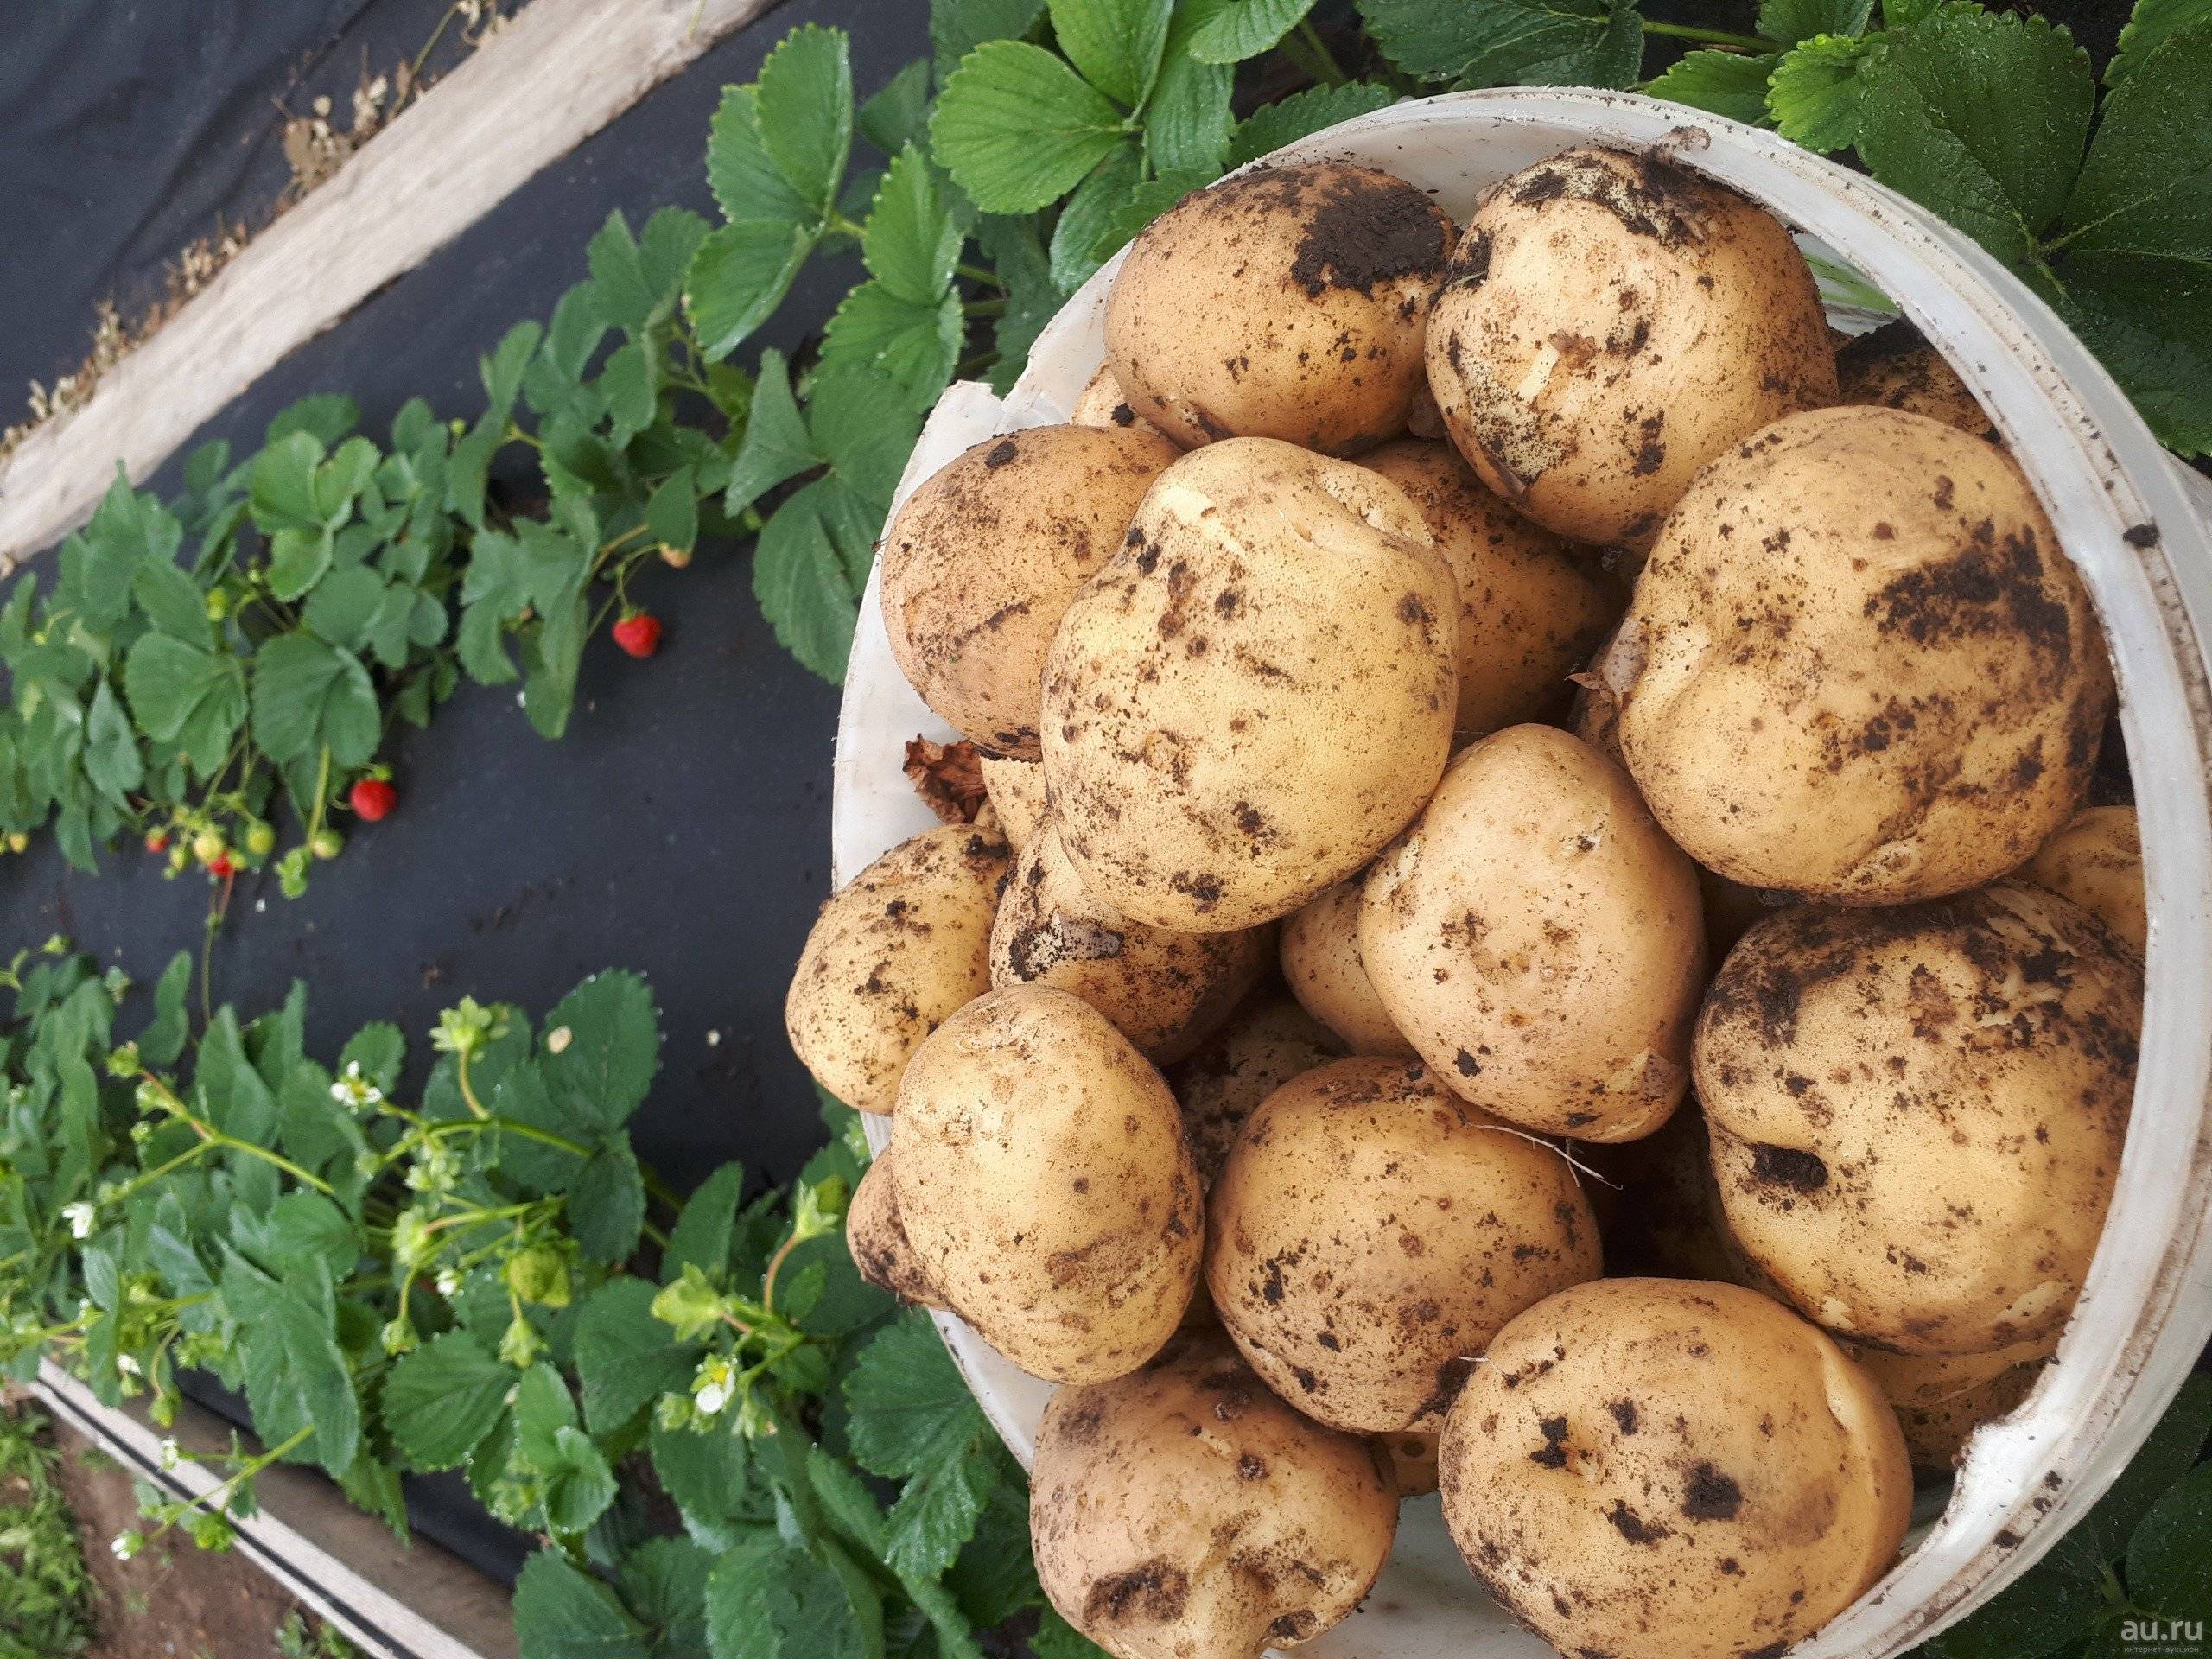 Когда убирать картофель - сроки и признаки зрелости клубней? правильная уборка картофеля и подготовка к хранению и на посадку на следующий год